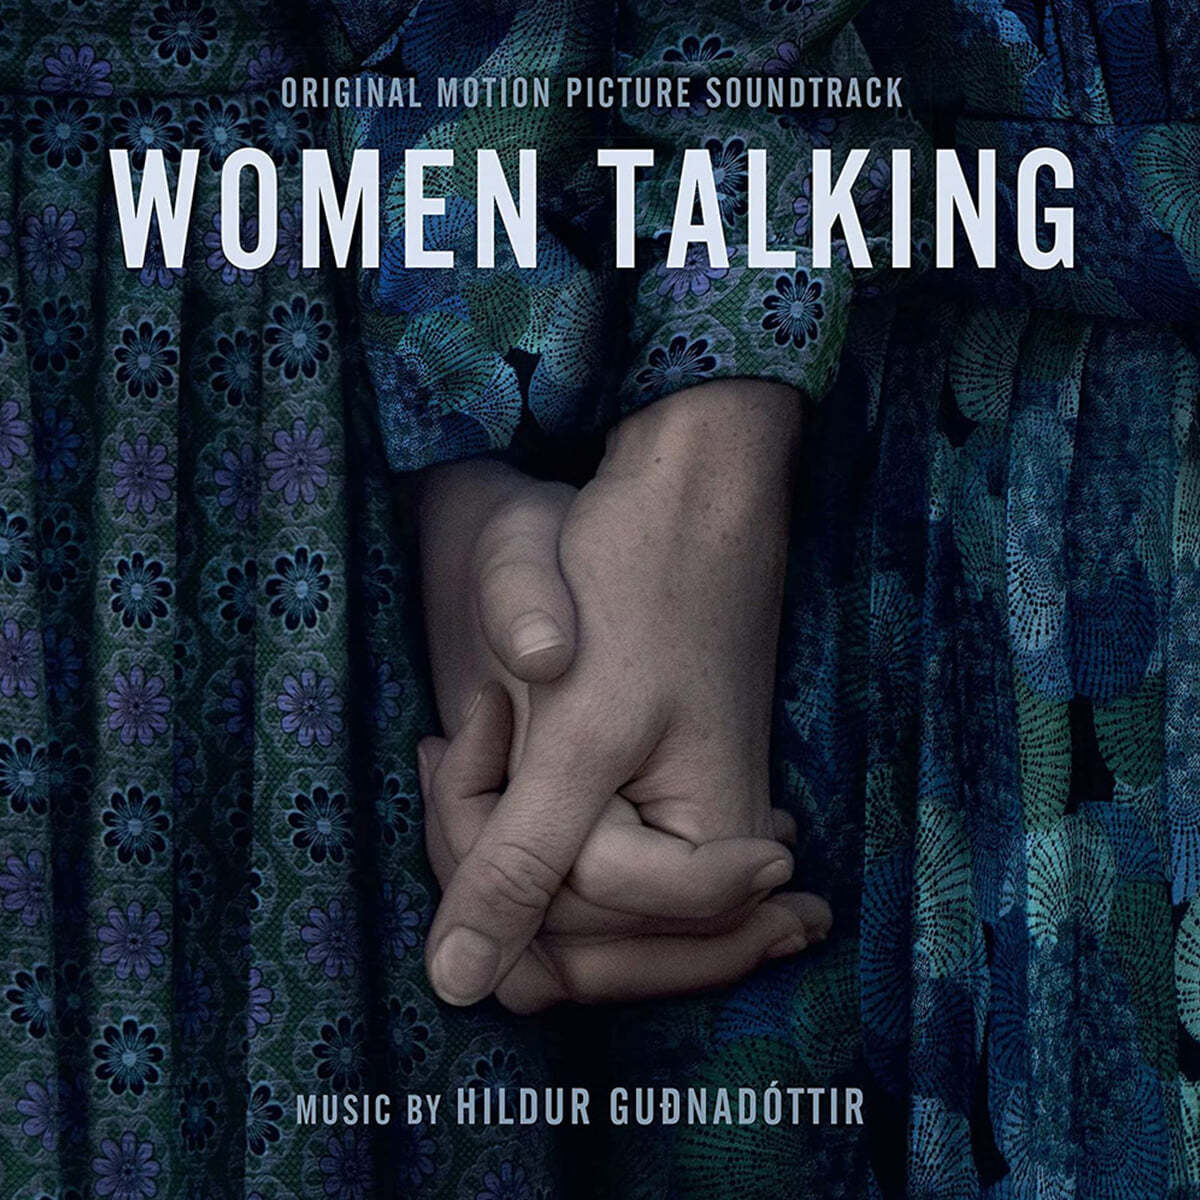 위민 토킹 영화음악 (Women Talking OST by Hildur Gudnadottir) 